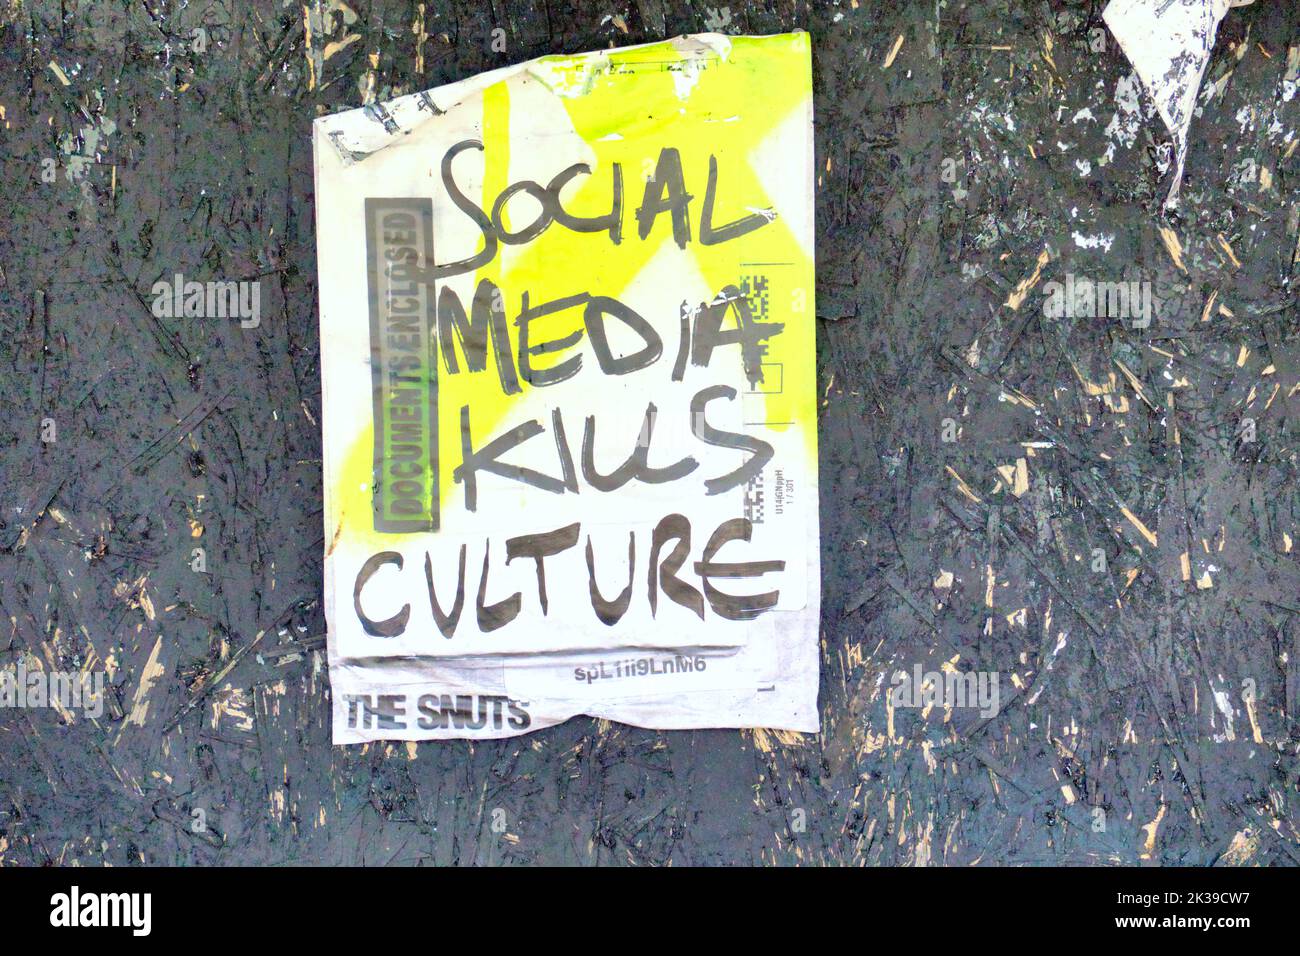 Los medios sociales matan a la cultura ¿Los medios sociales matan a la música? – Los Nuts publican el cartel Zuckerpunch en la pared de Glasgow, Escocia, Reino Unido Foto de stock